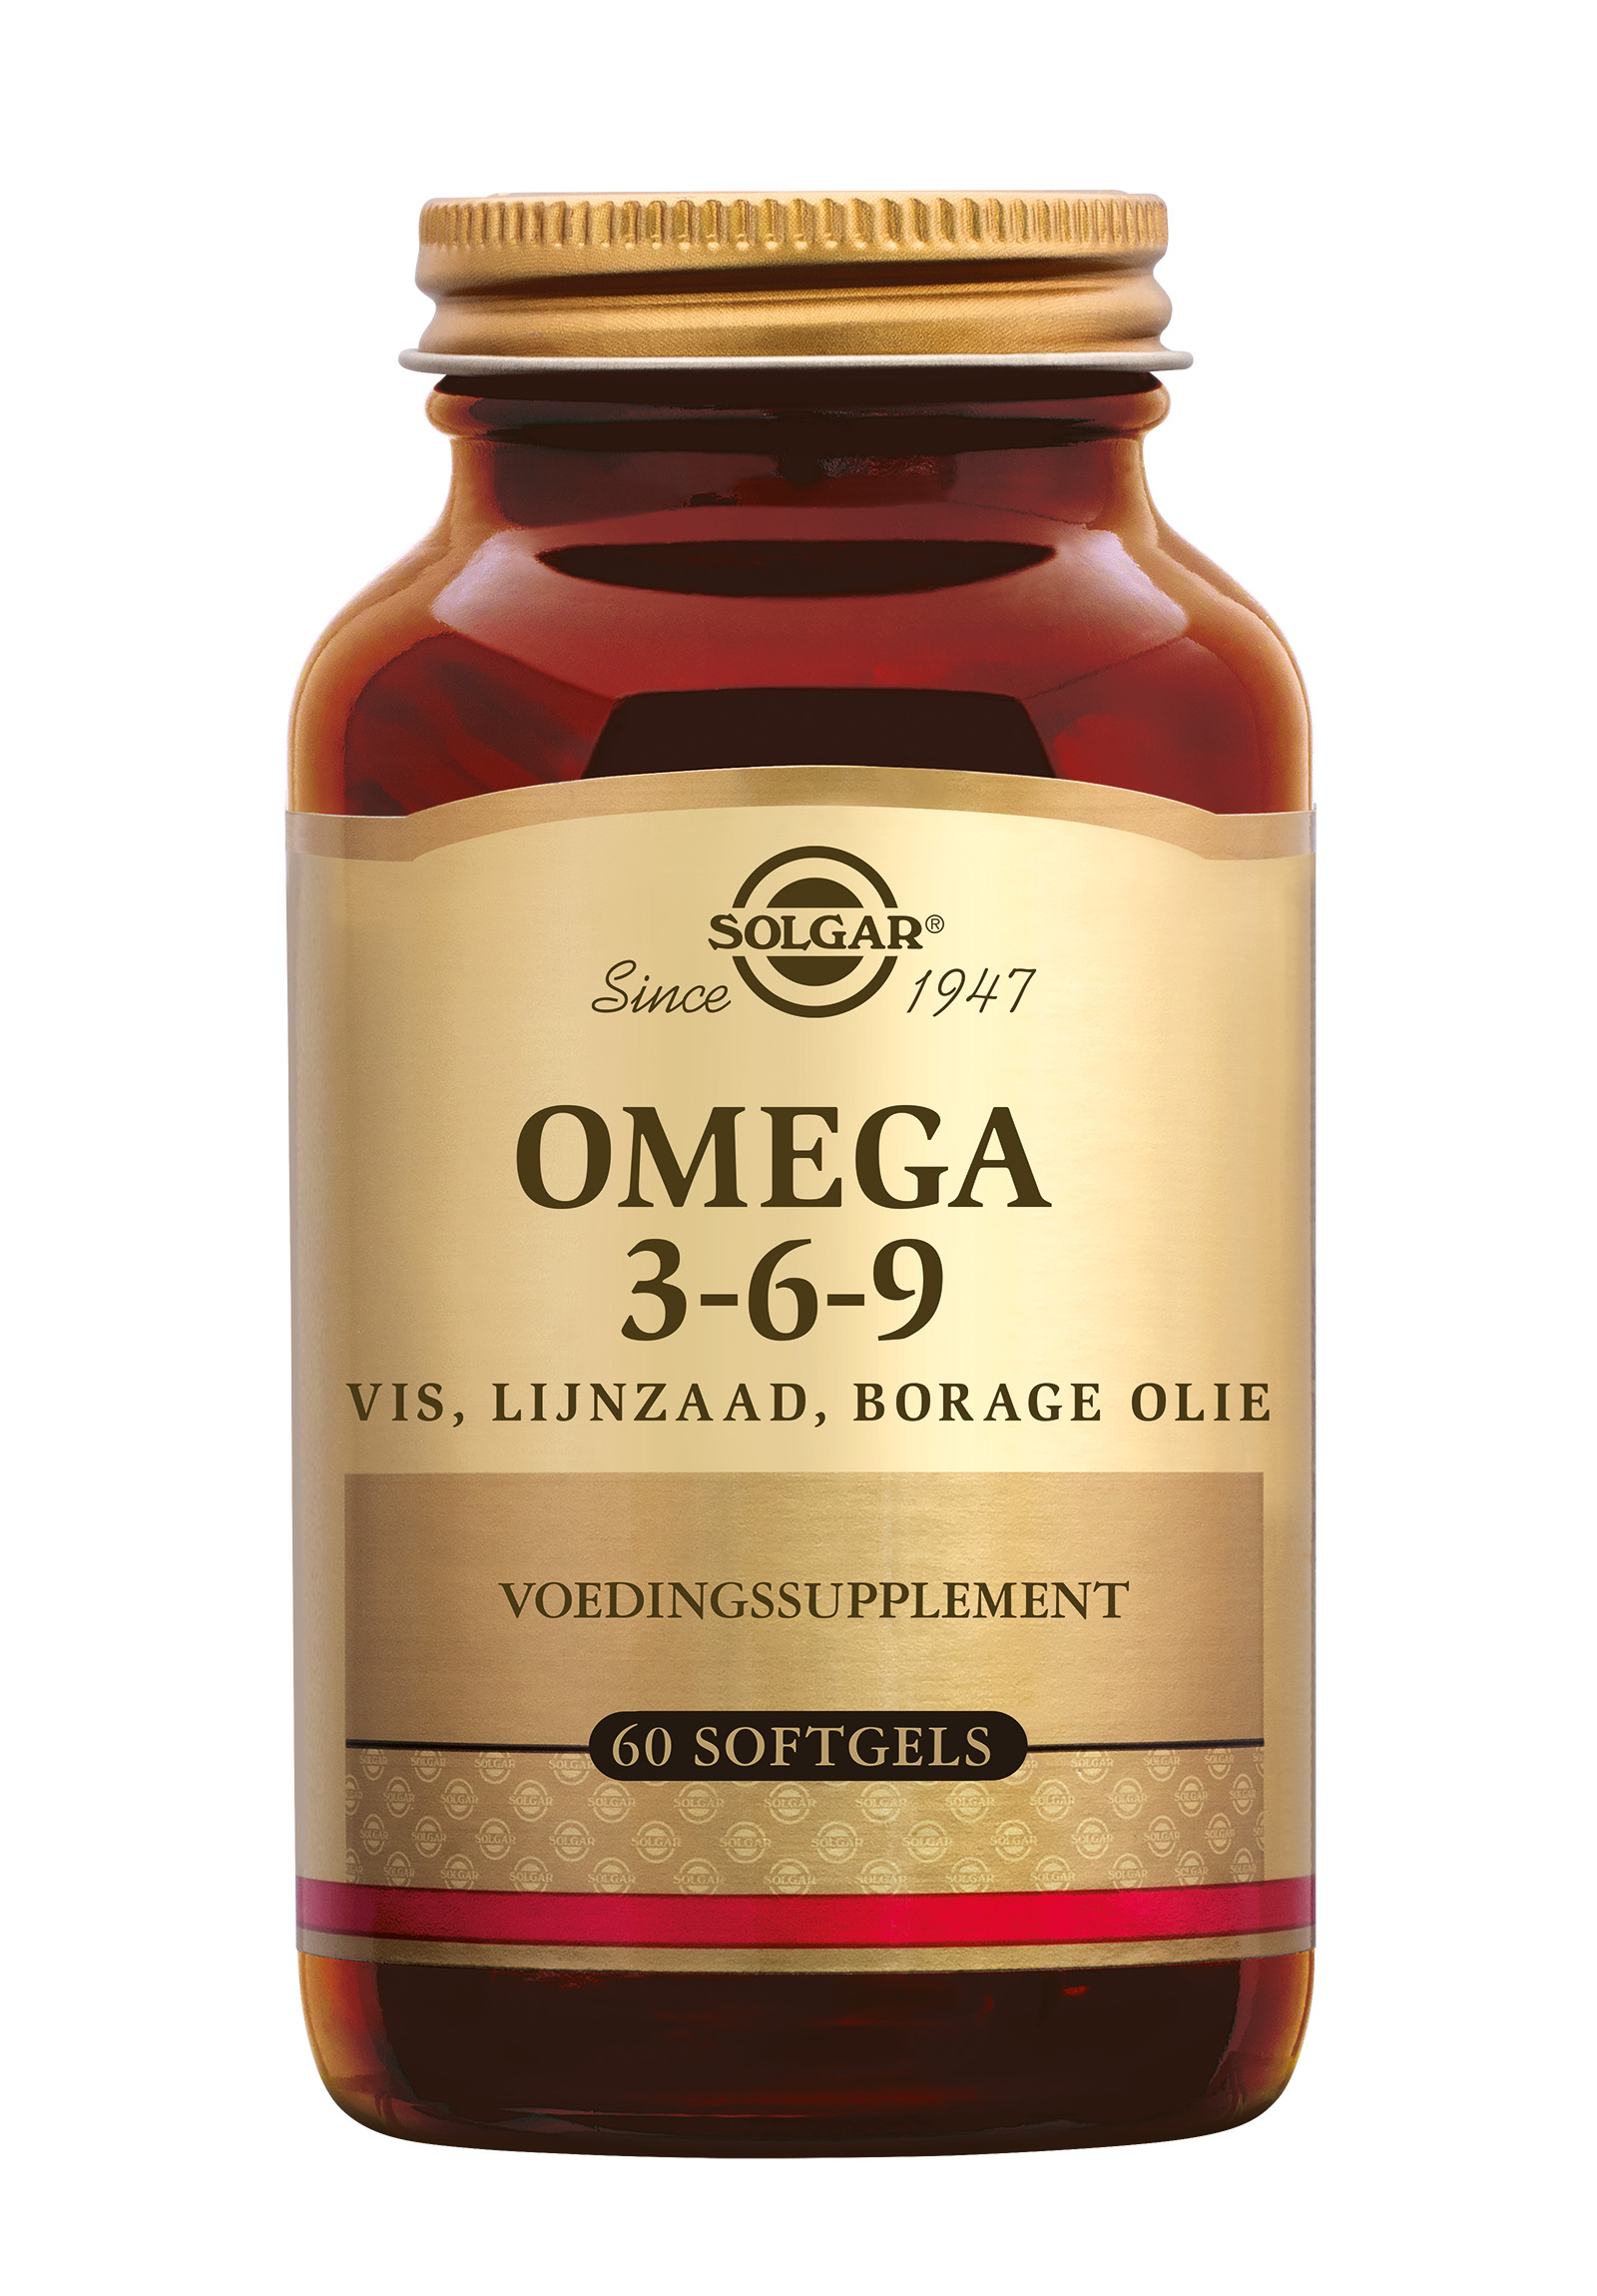 Solgar Omega 3-6-9 (60 stuks)